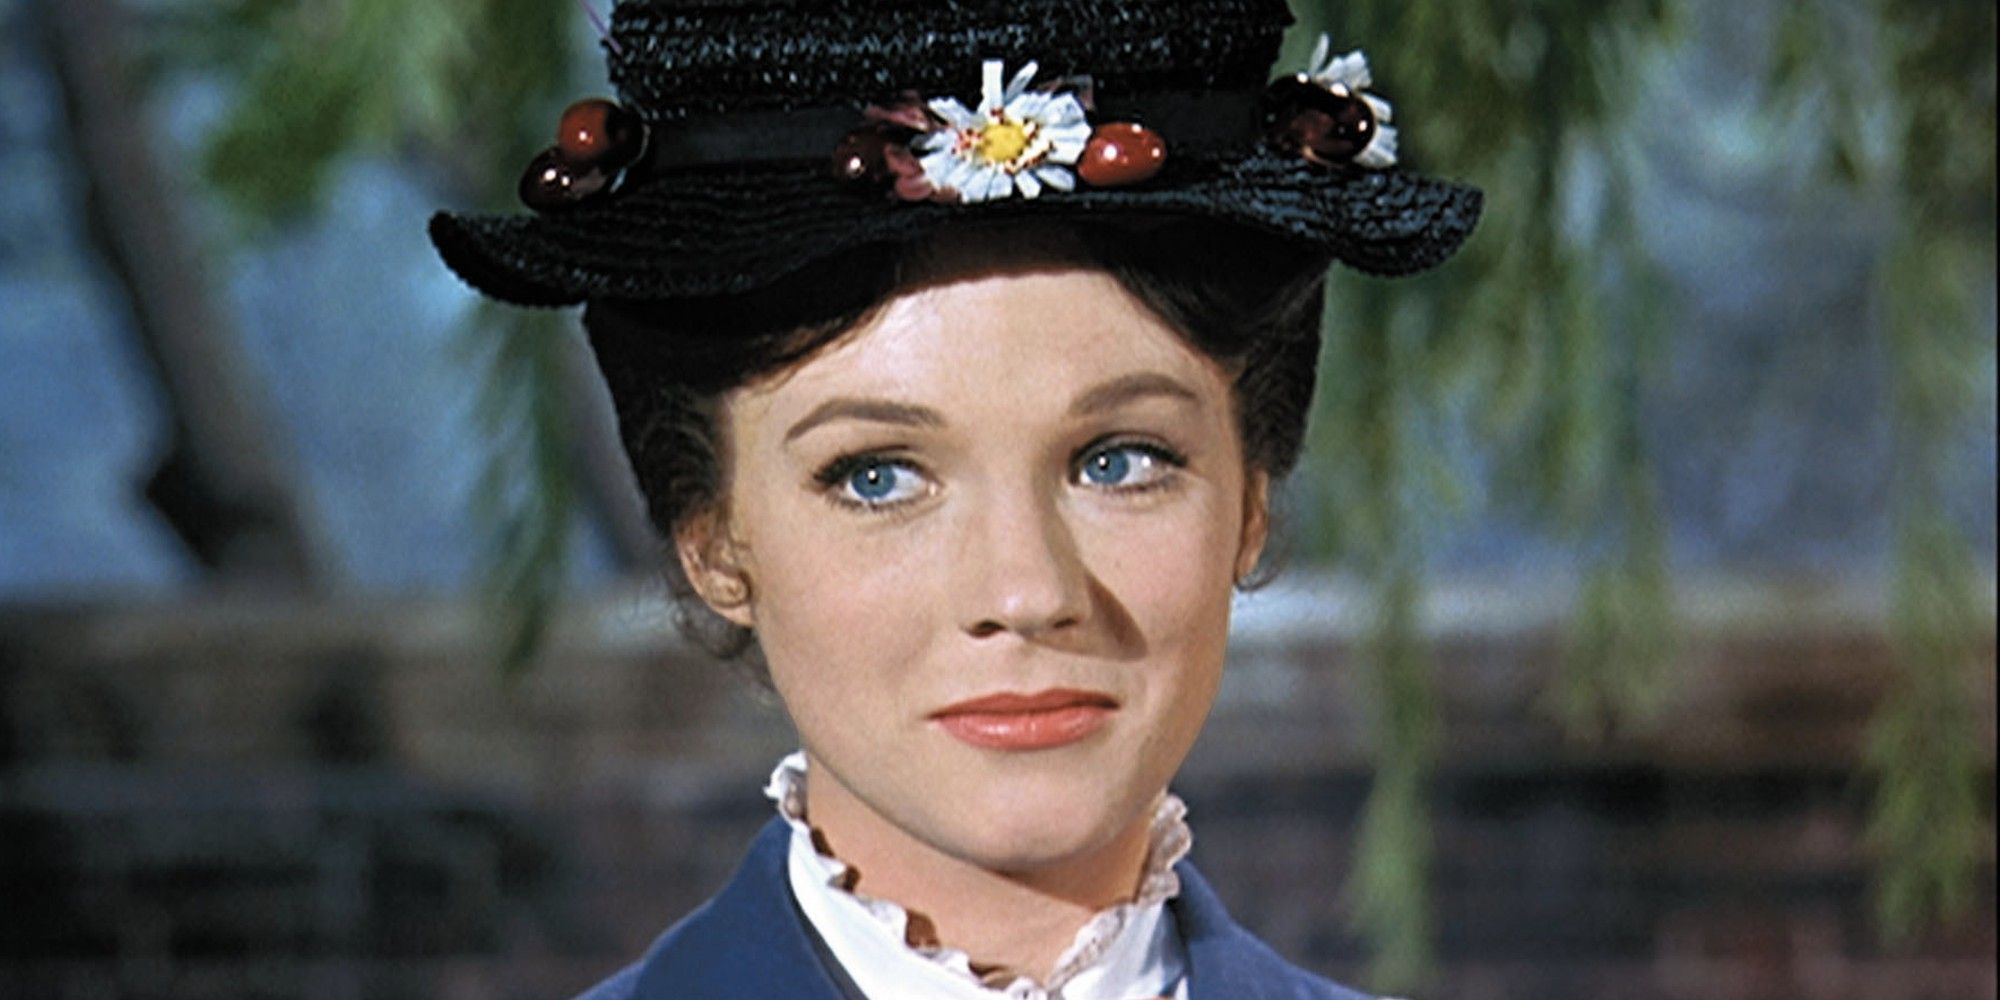 'Mary Poppins' (1964)